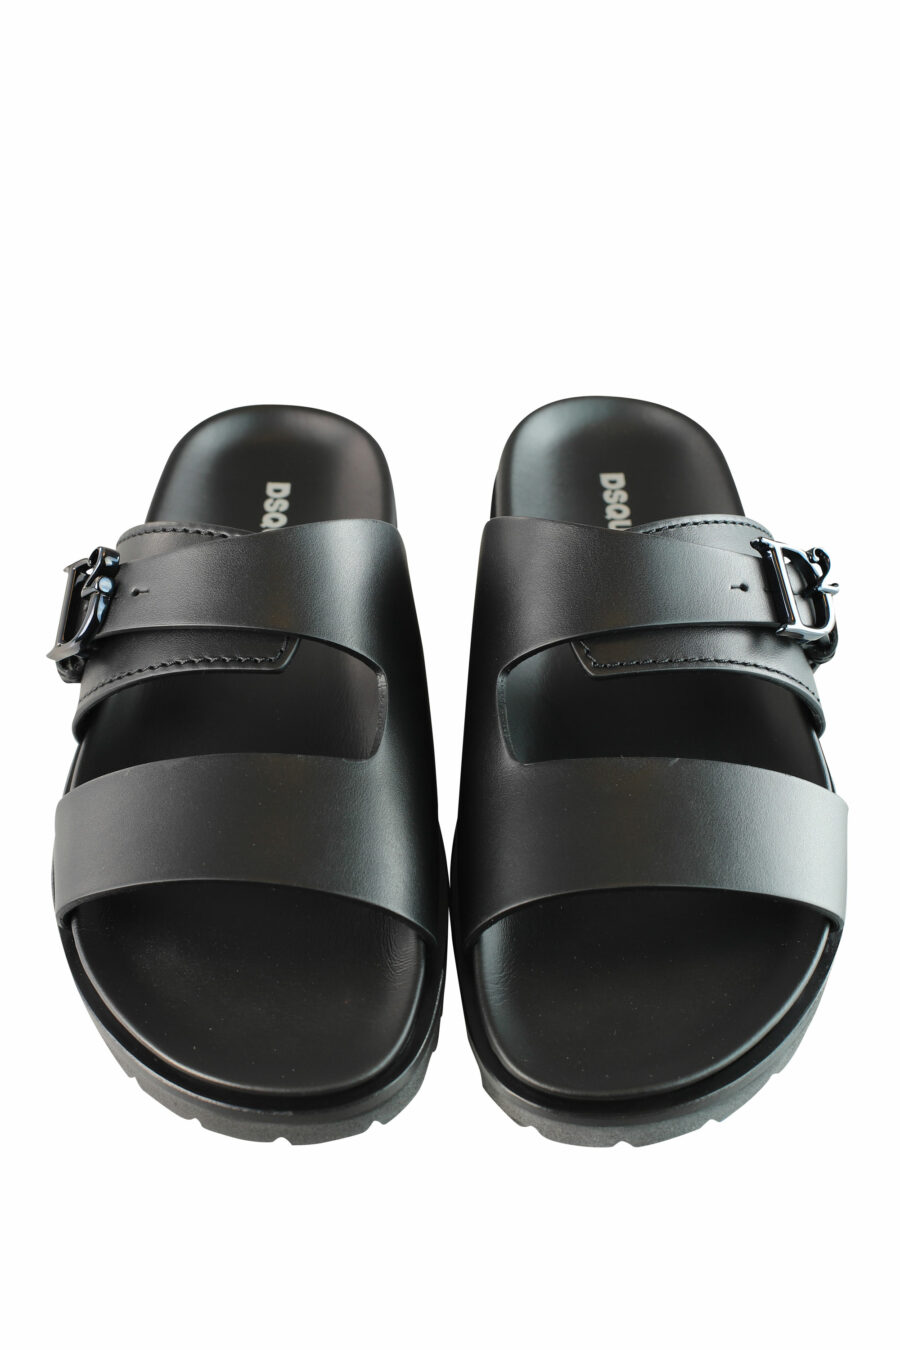 Sandalias negras con logo "D2" monocromático en metal - IMG 1290